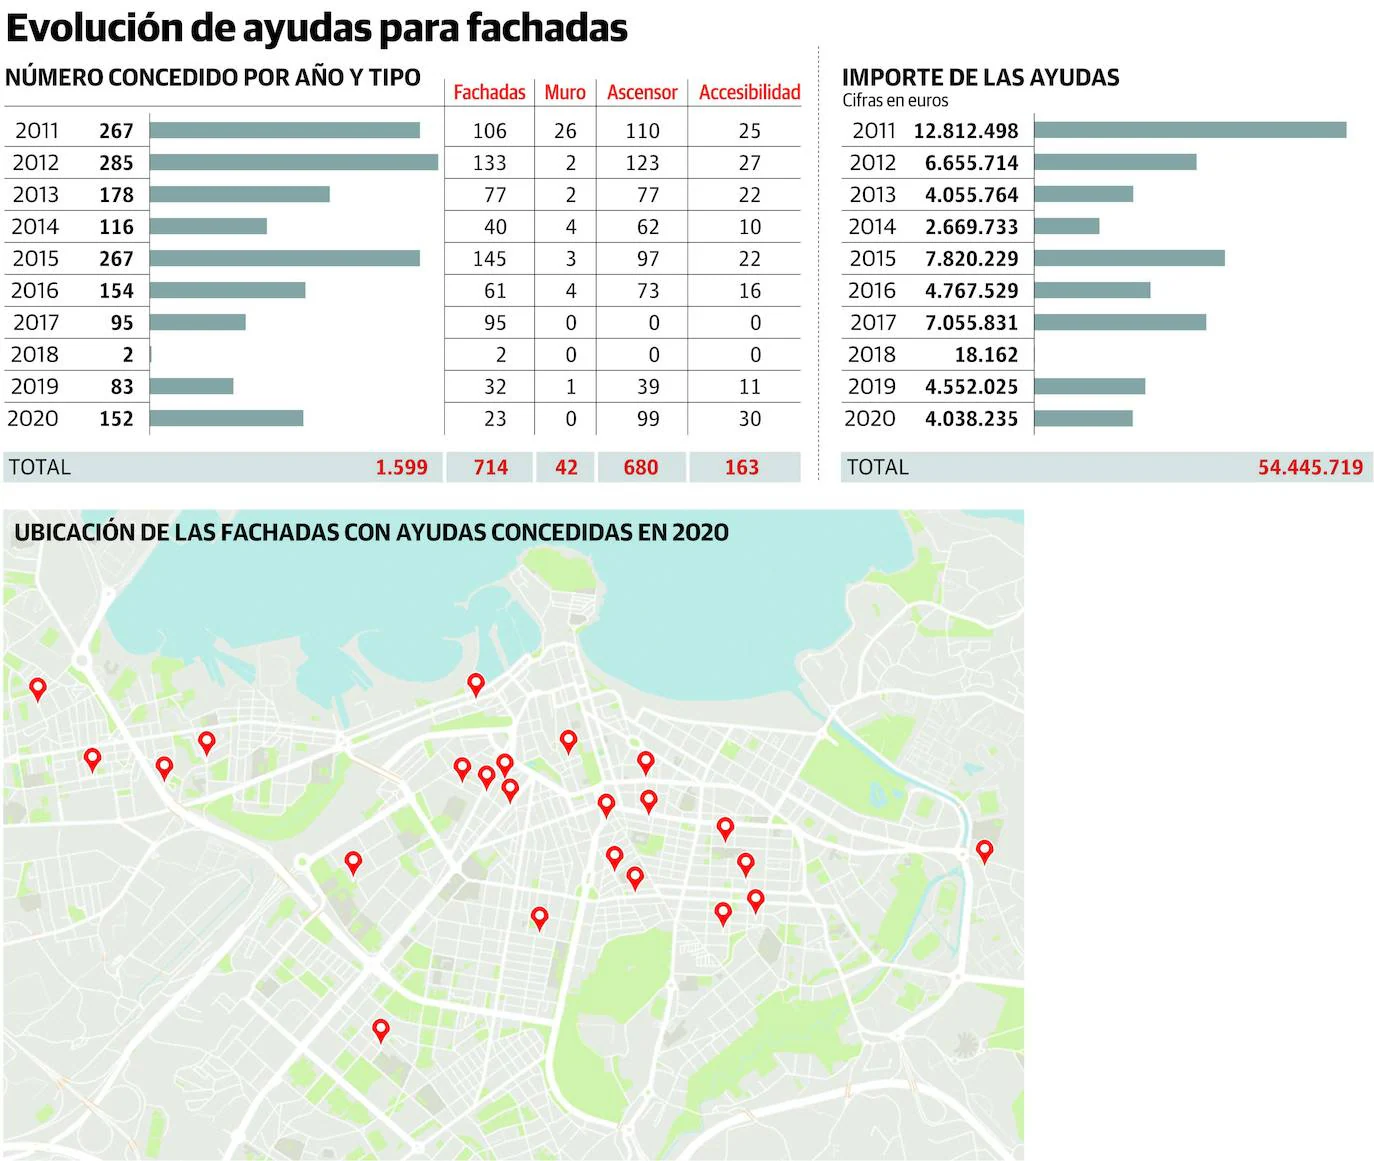 El Ayuntamiento de Gijón solo concedió un 10% de las 230 ayudas pendientes para fachadas en 2020